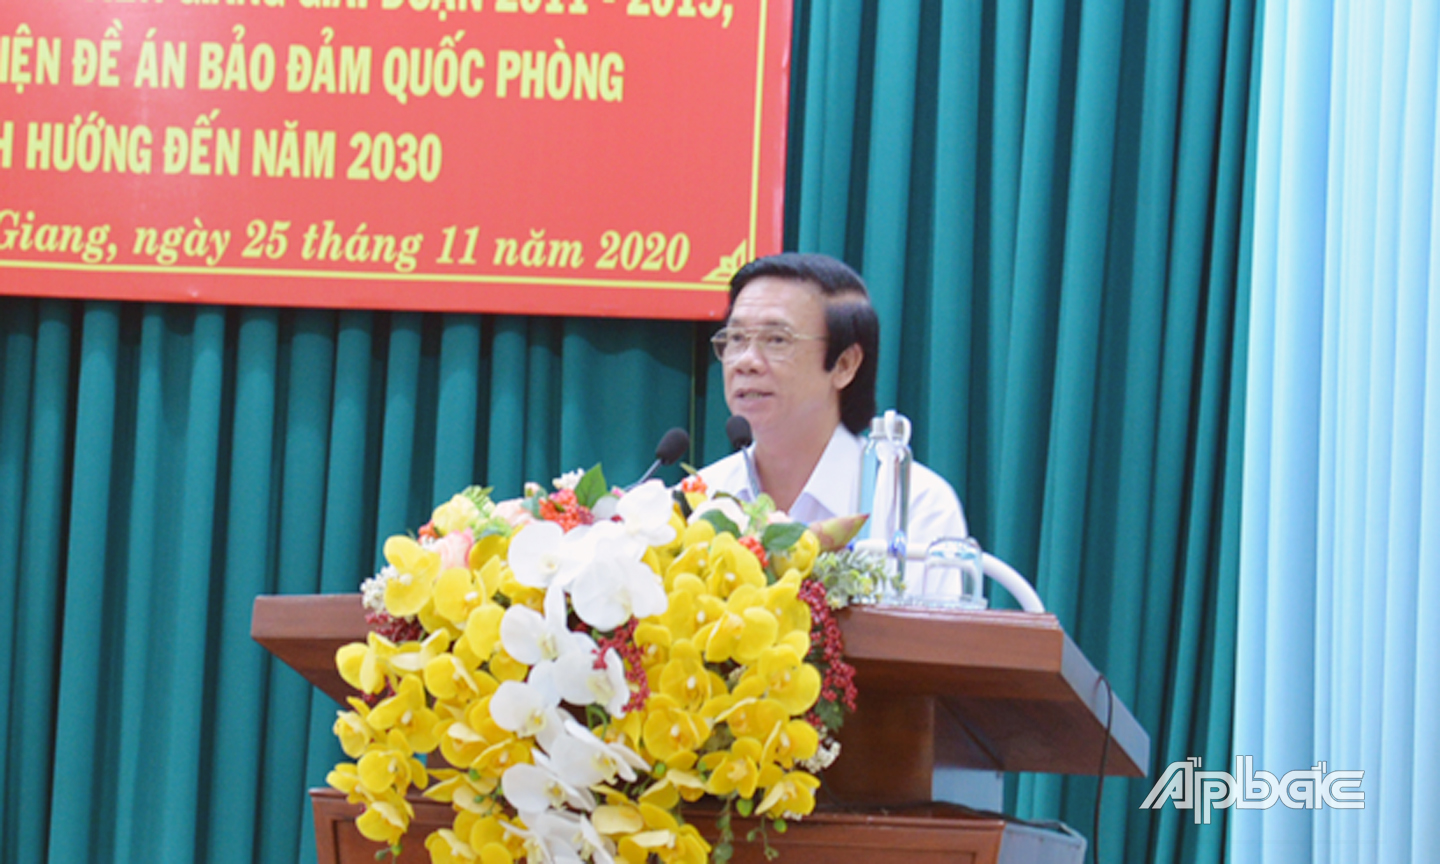 Bí thư tỉnh ủy Nguyễn Văn Danh ghi nhận và biểu dương các kết quả đạt được trong thực hiện xây dựng khu vực phòng thủ và đảm bảo quốc phòng thời gian qua